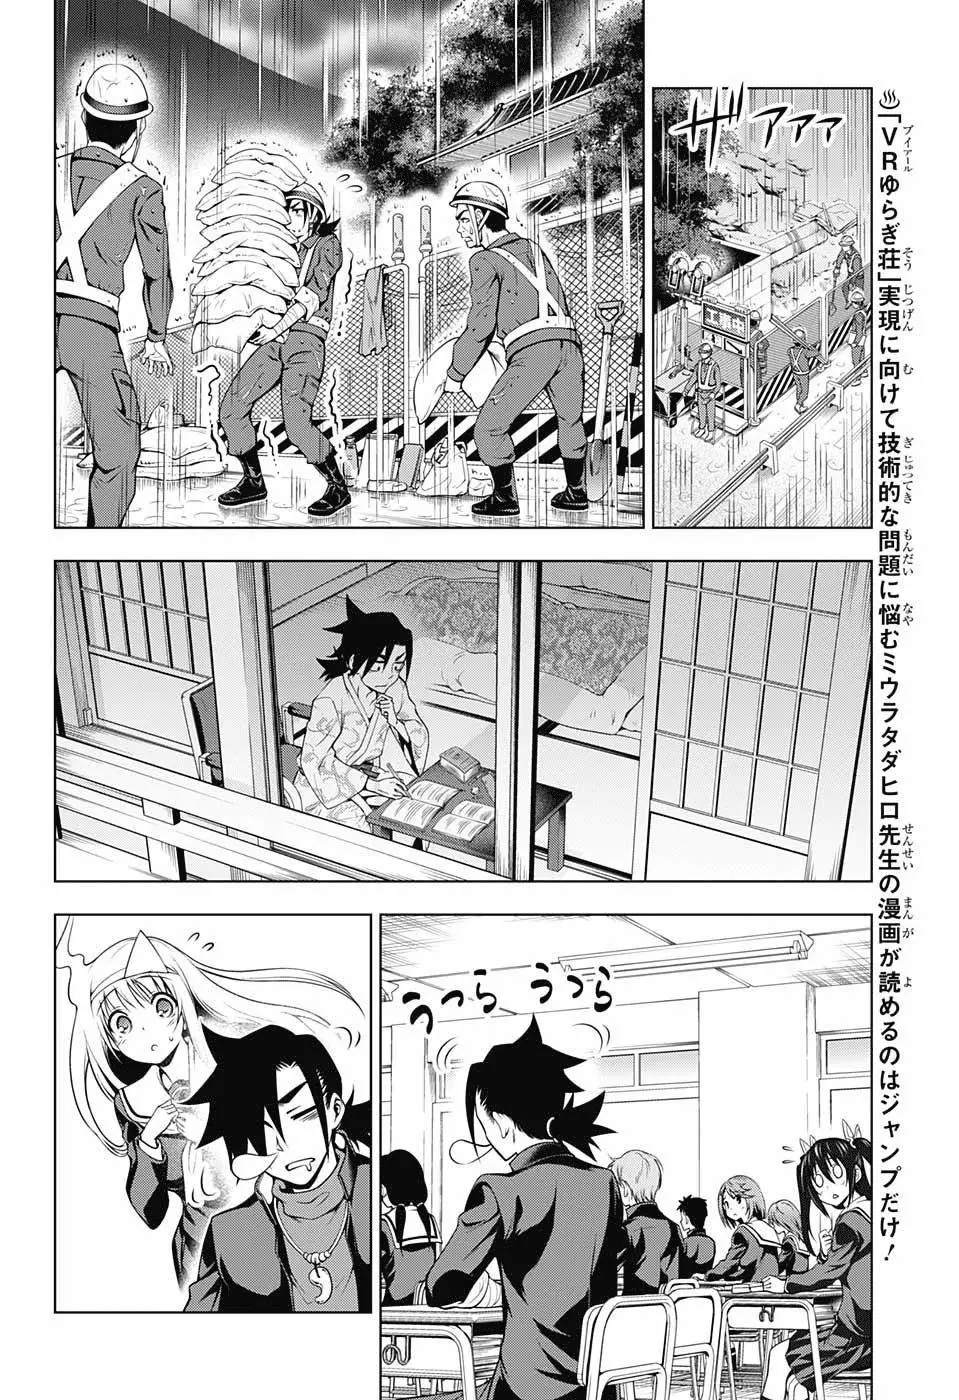 Yuragi-sou no Yuuna-san - 40 page 8-74f225c7